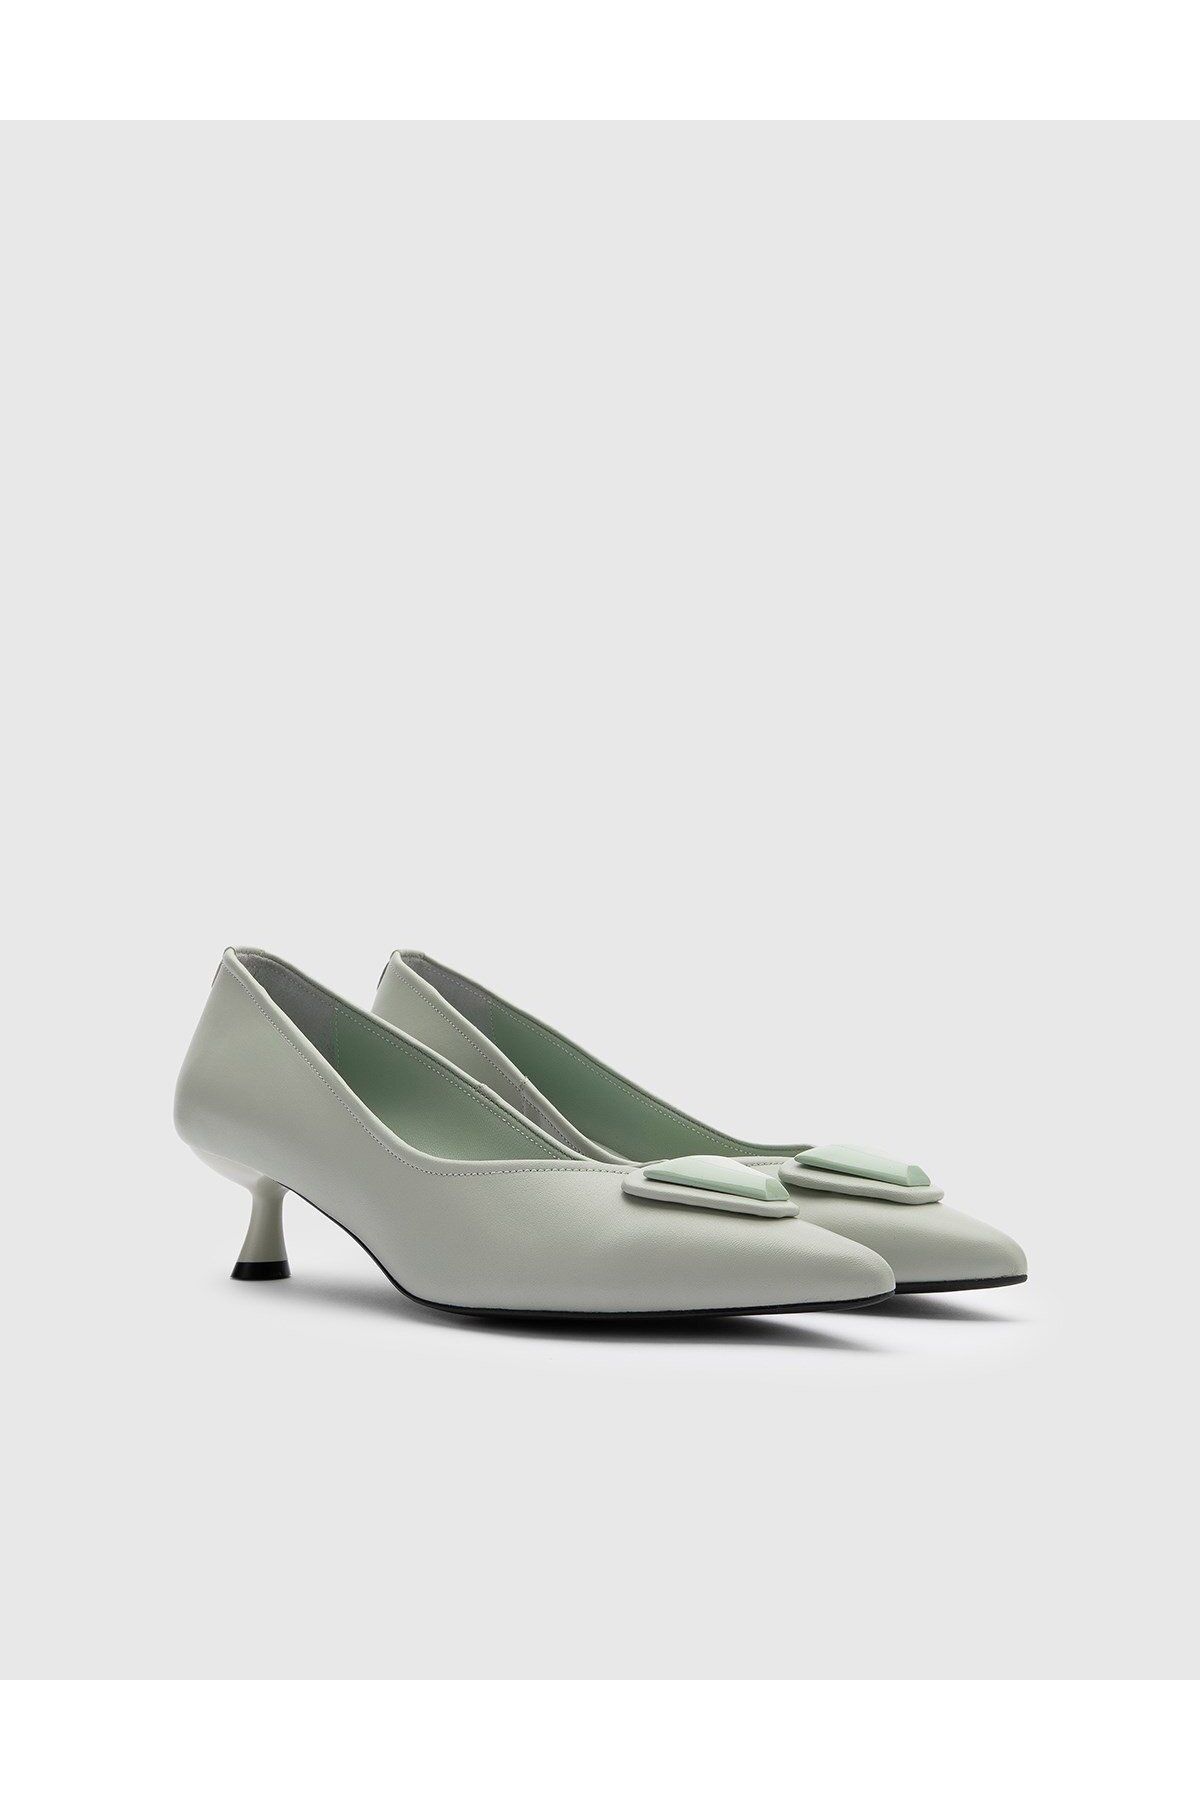 İlvi Tzvi Hakiki Deri Kadın Su Yeşili Topuklu Ayakkabı